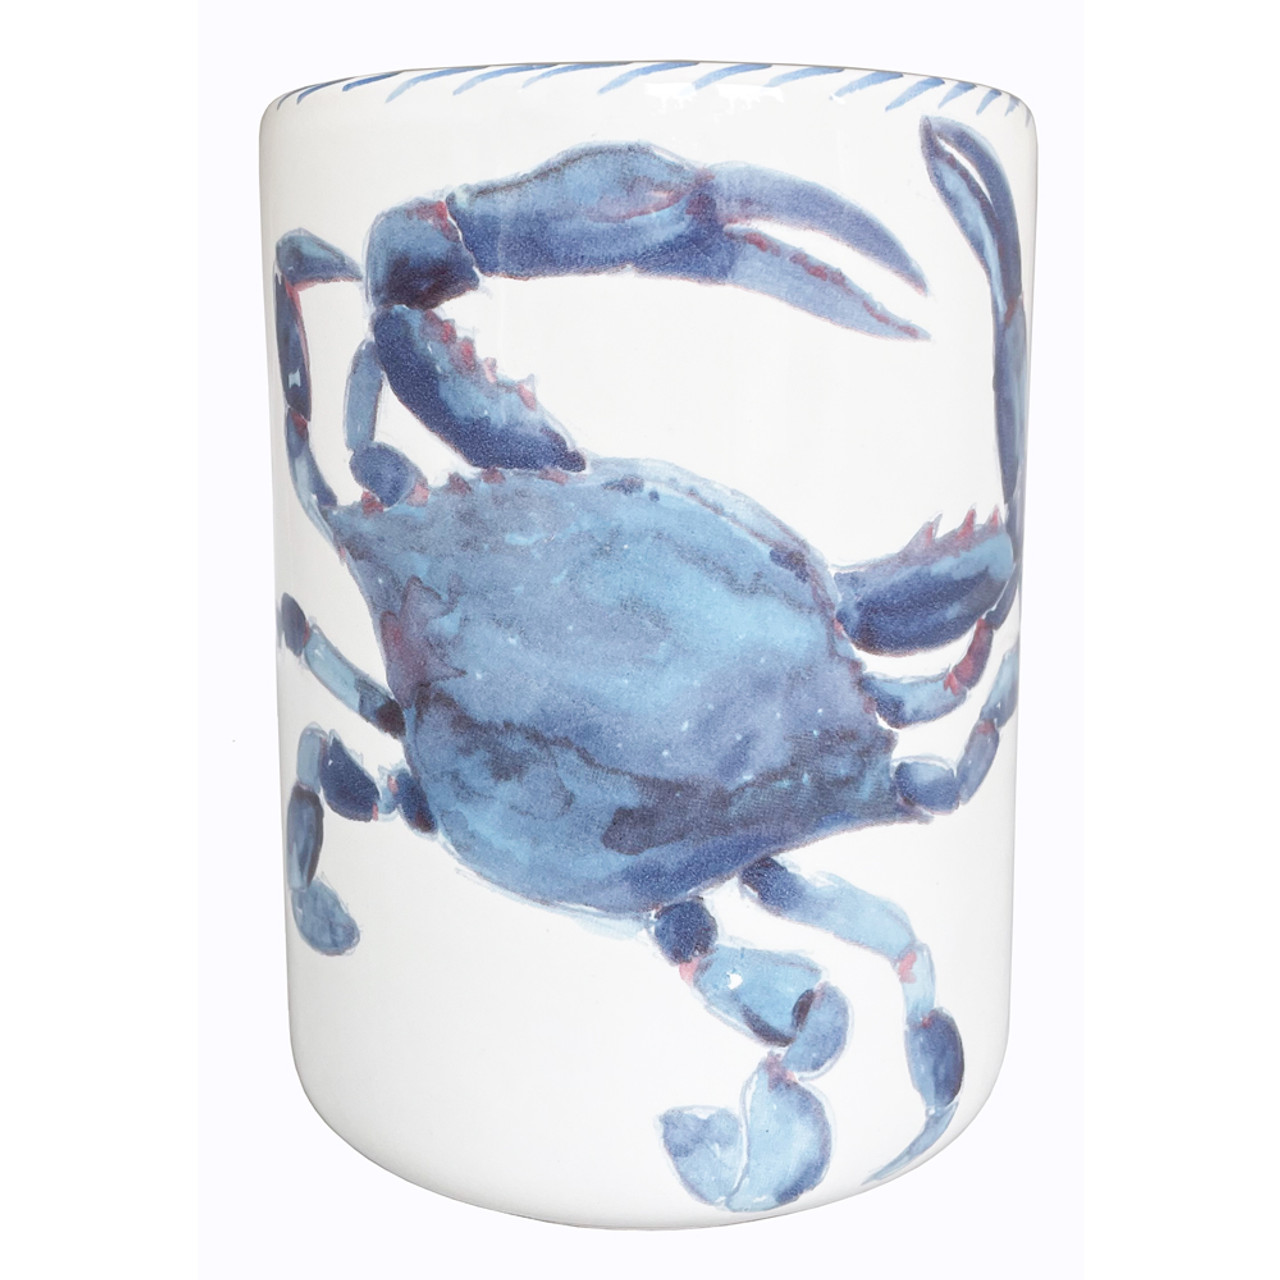 Crab Metal and Glass Cooking Utensil Jar - Choose Color